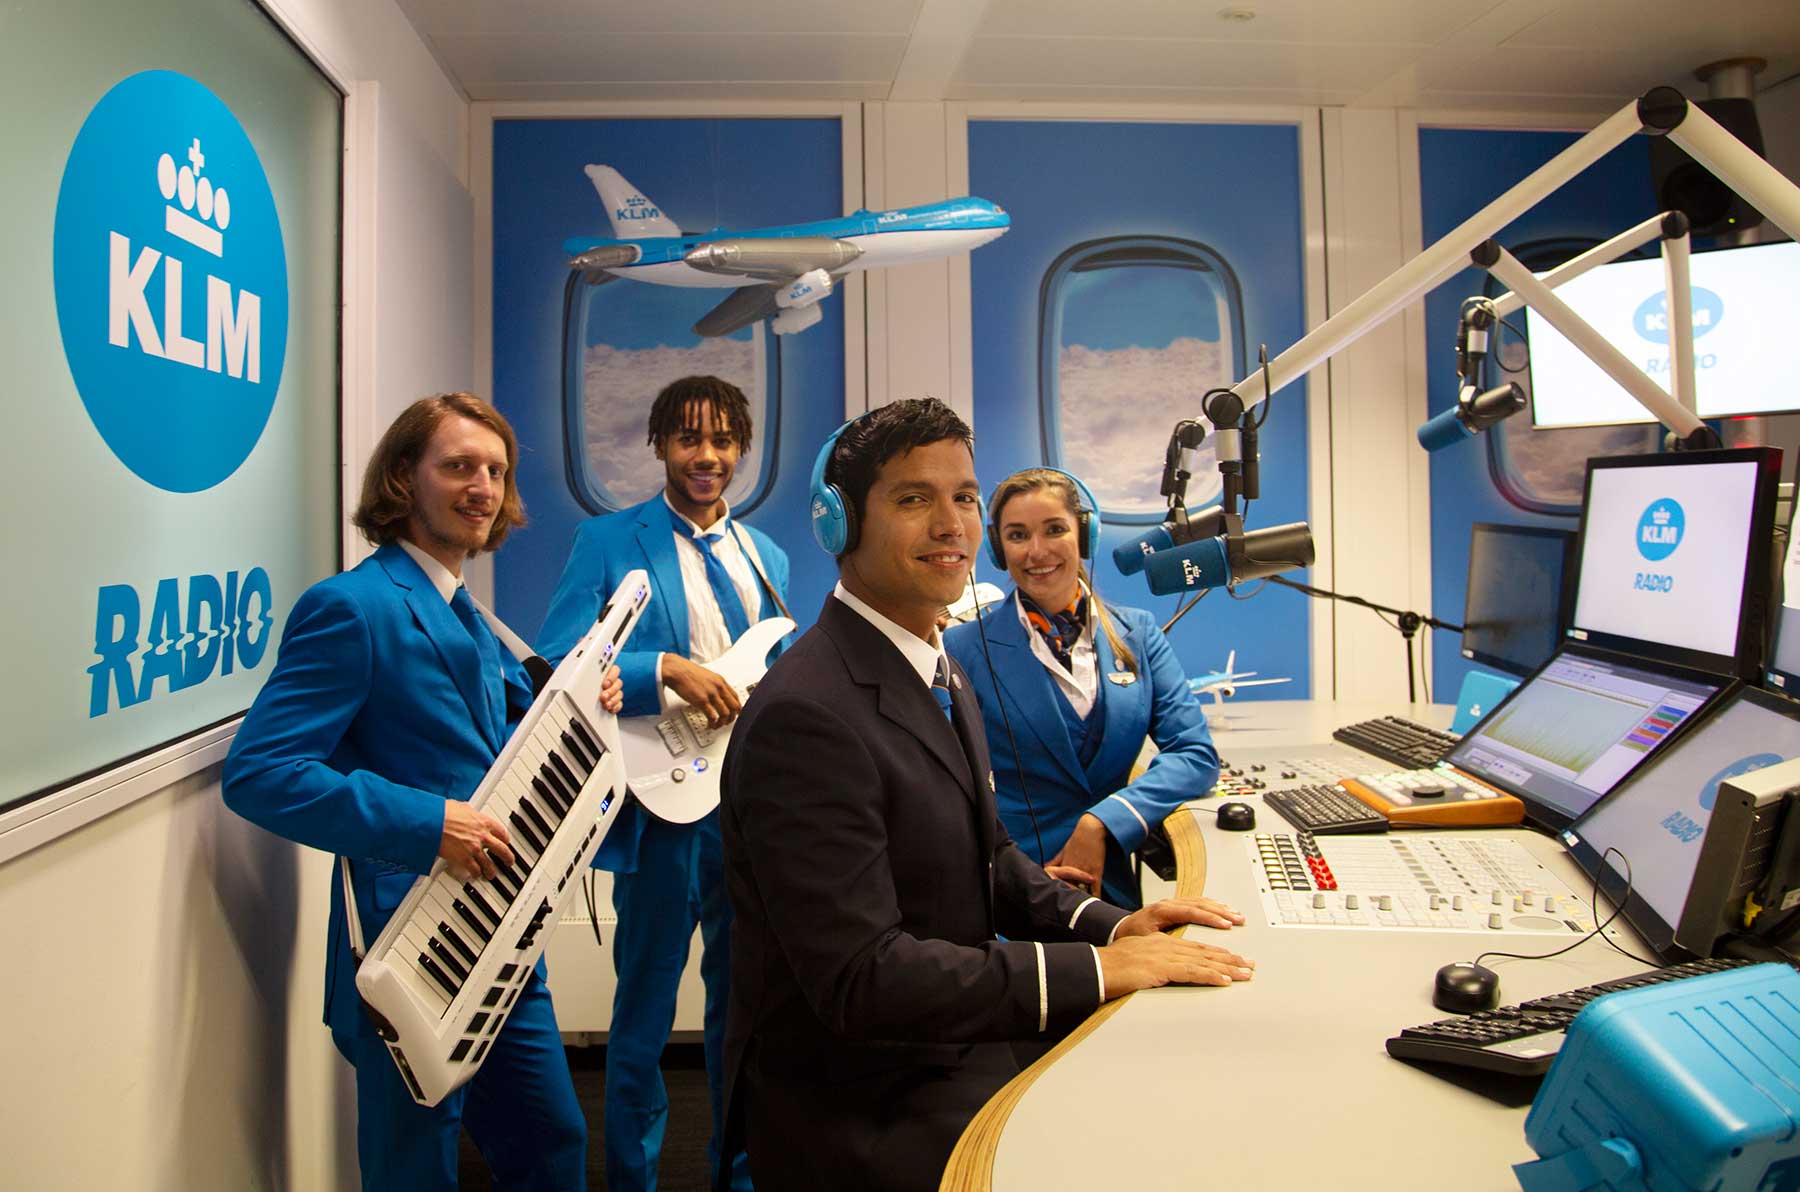 Ist KLM eine Bank, ein Restaurant oder ein Radiosender?